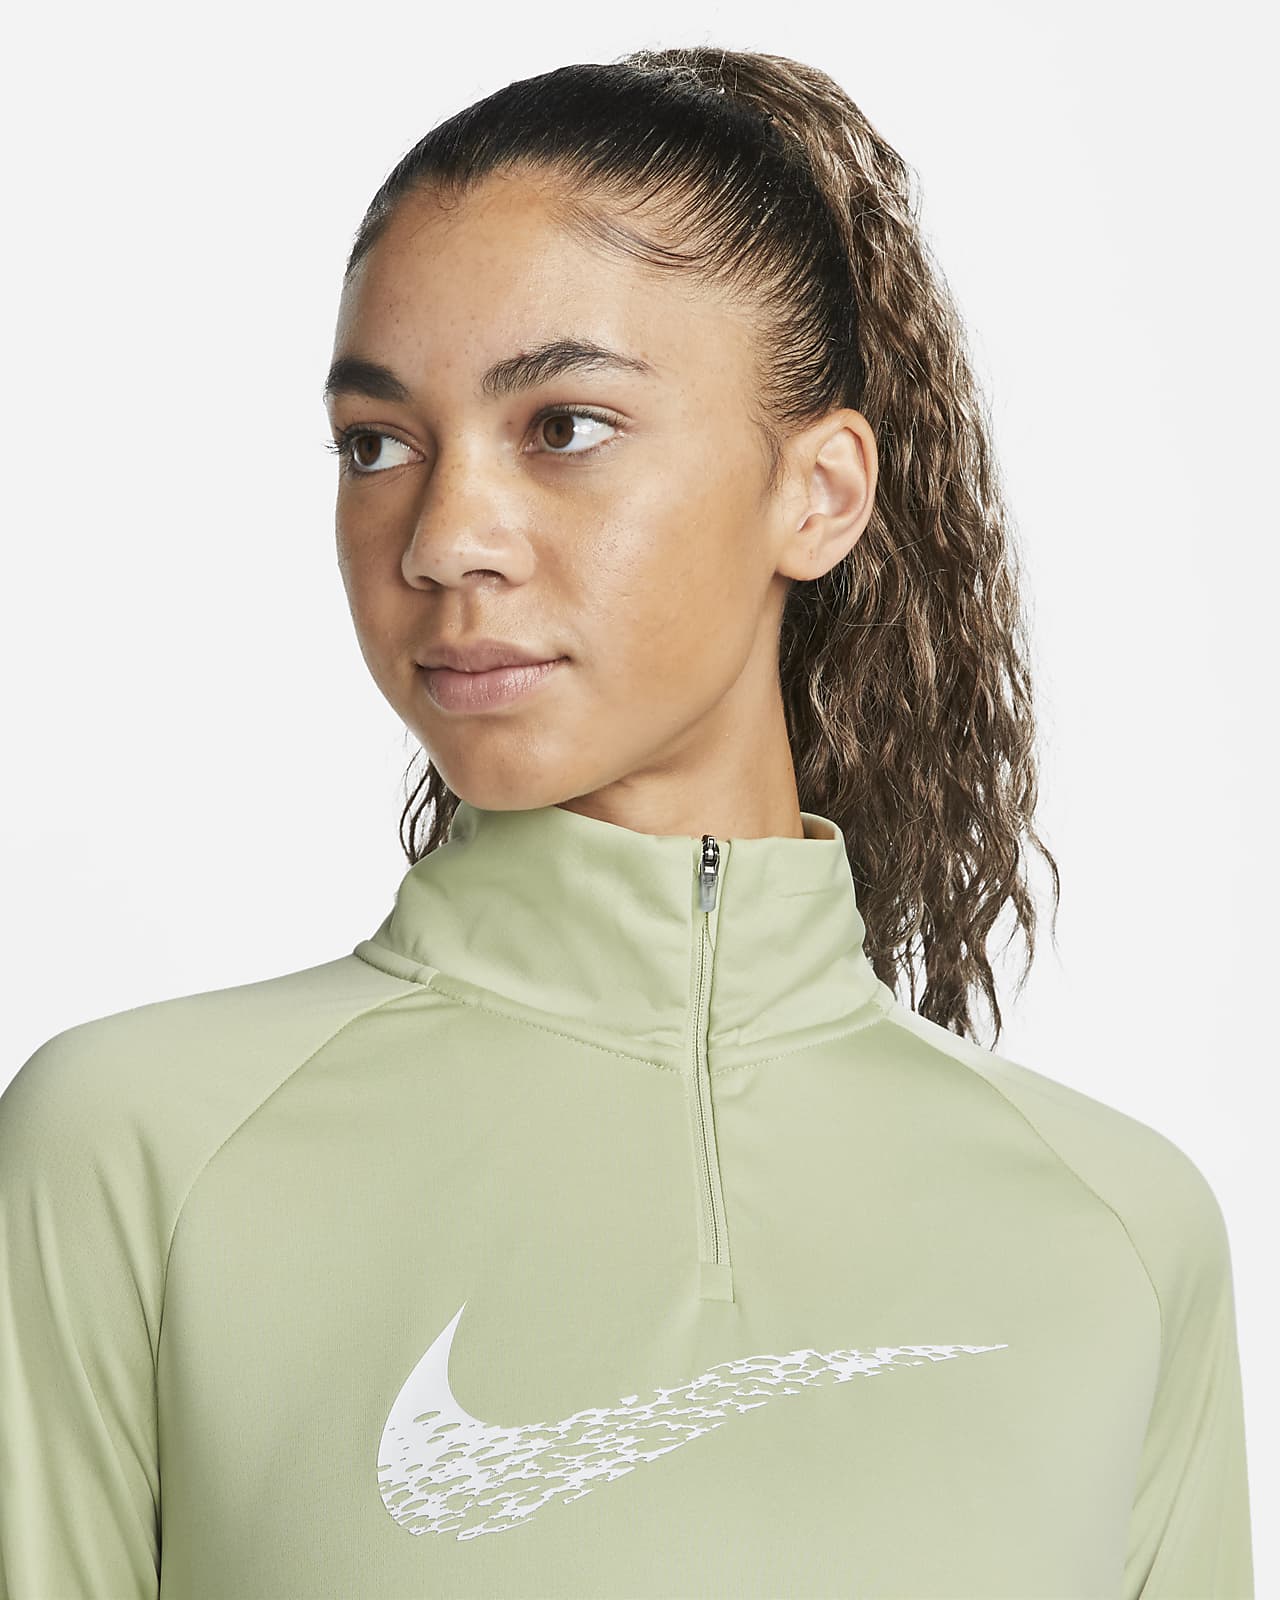 Nike Dri-FIT Swoosh Run Women's Running Midlayer. Nike LU